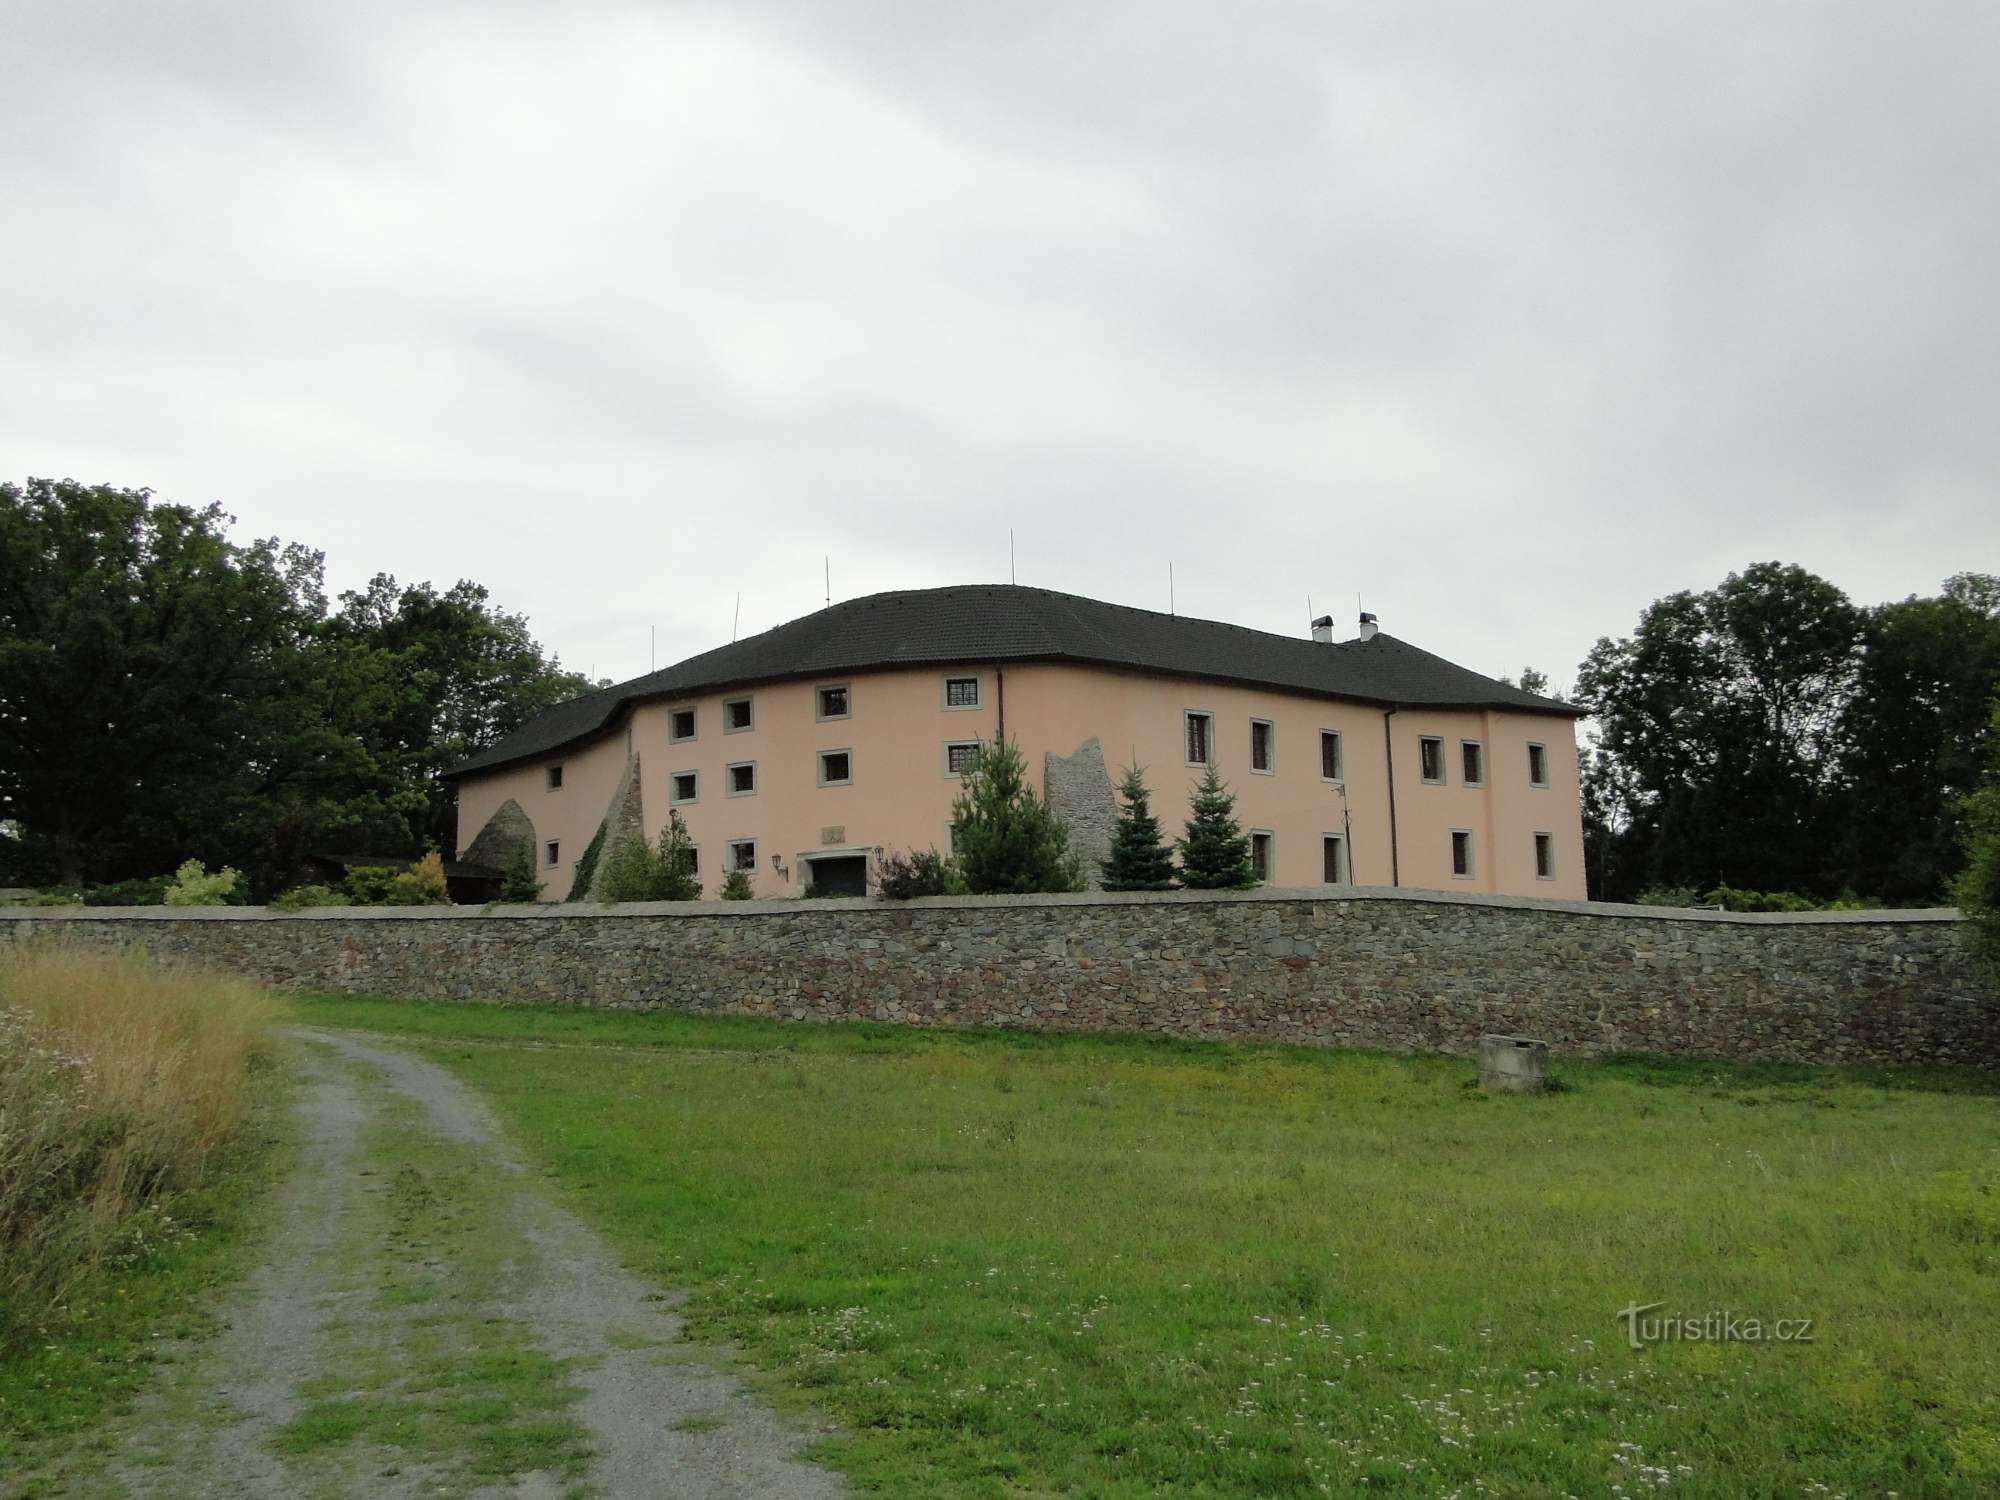 Krakowec slott